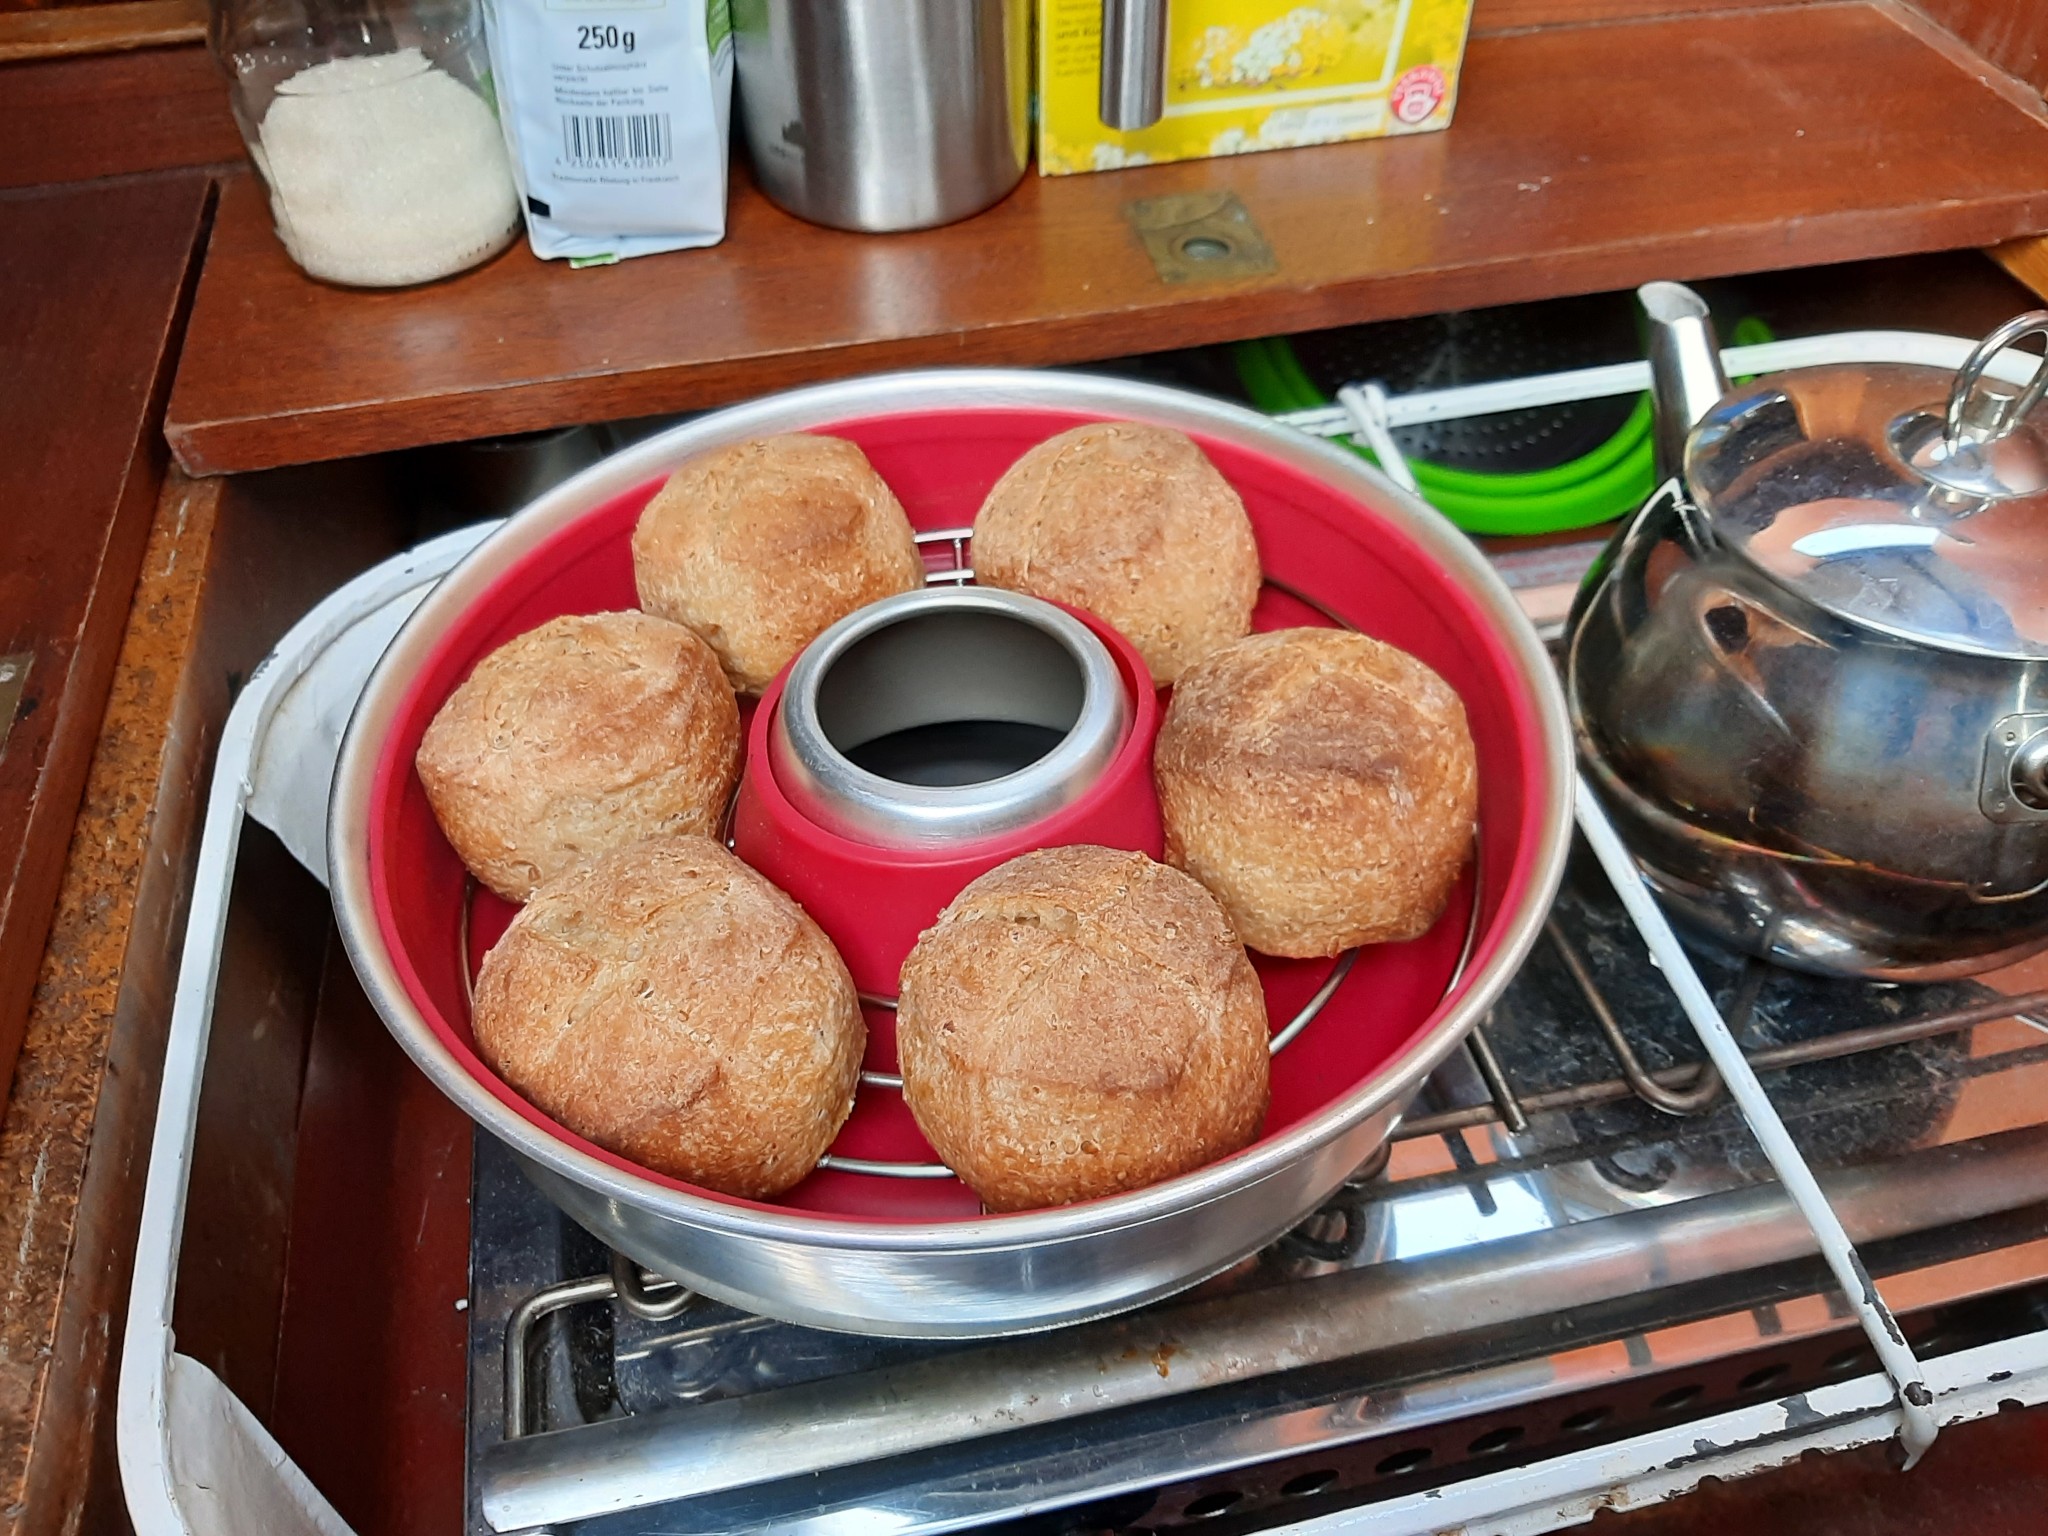 Omnia-Ofen mit aufgebackenen Brötchen